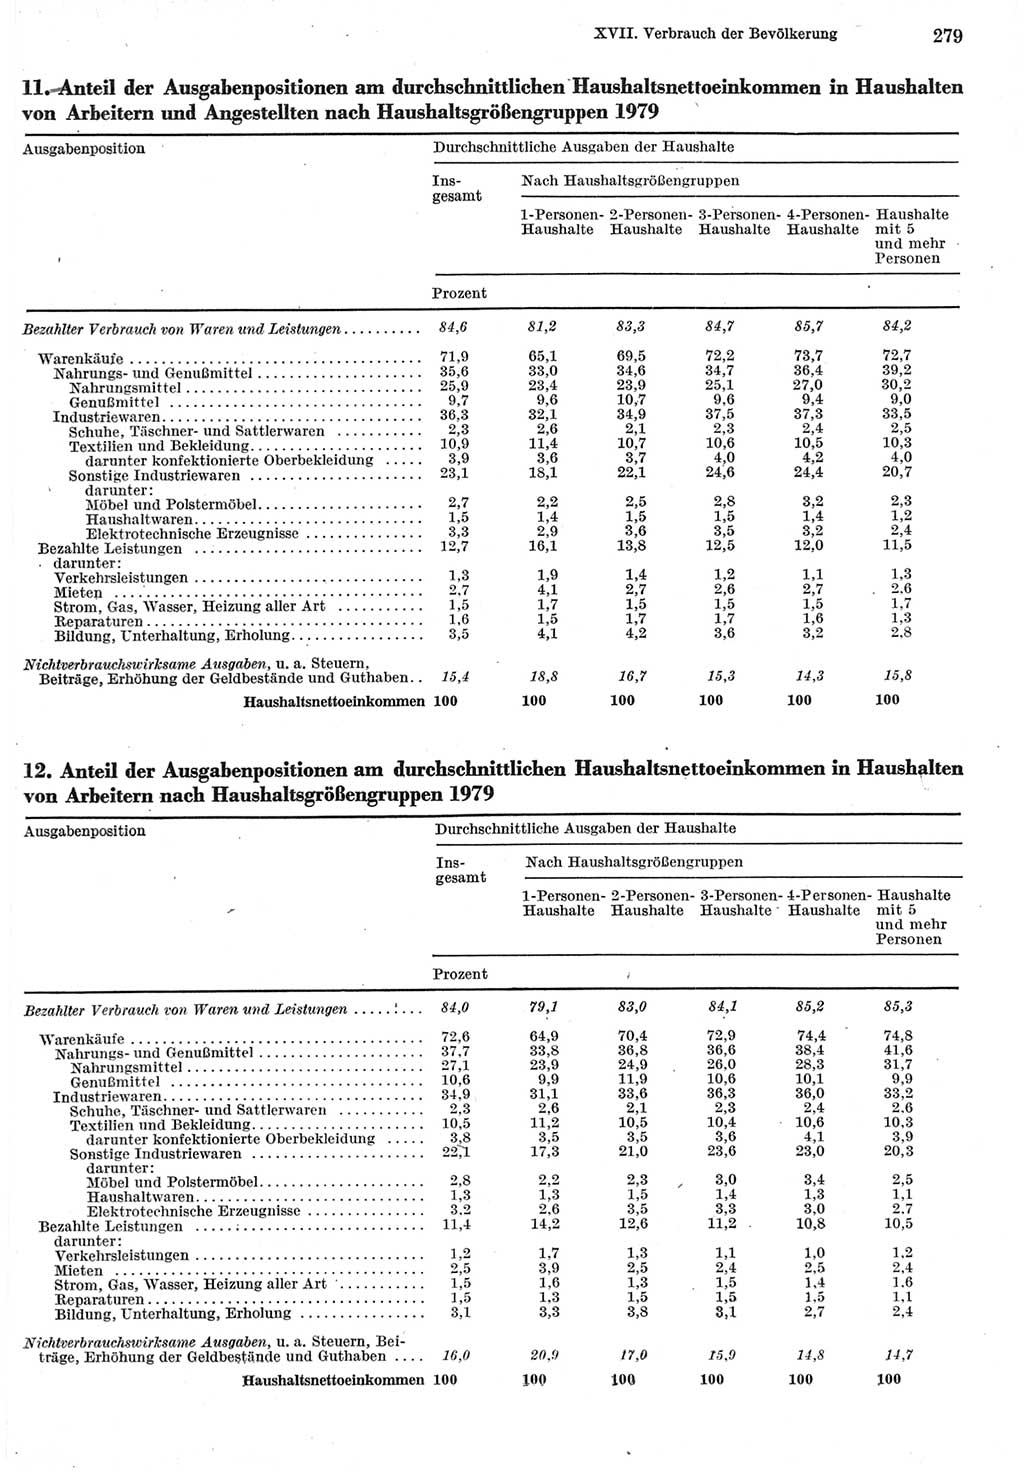 Statistisches Jahrbuch der Deutschen Demokratischen Republik (DDR) 1980, Seite 279 (Stat. Jb. DDR 1980, S. 279)